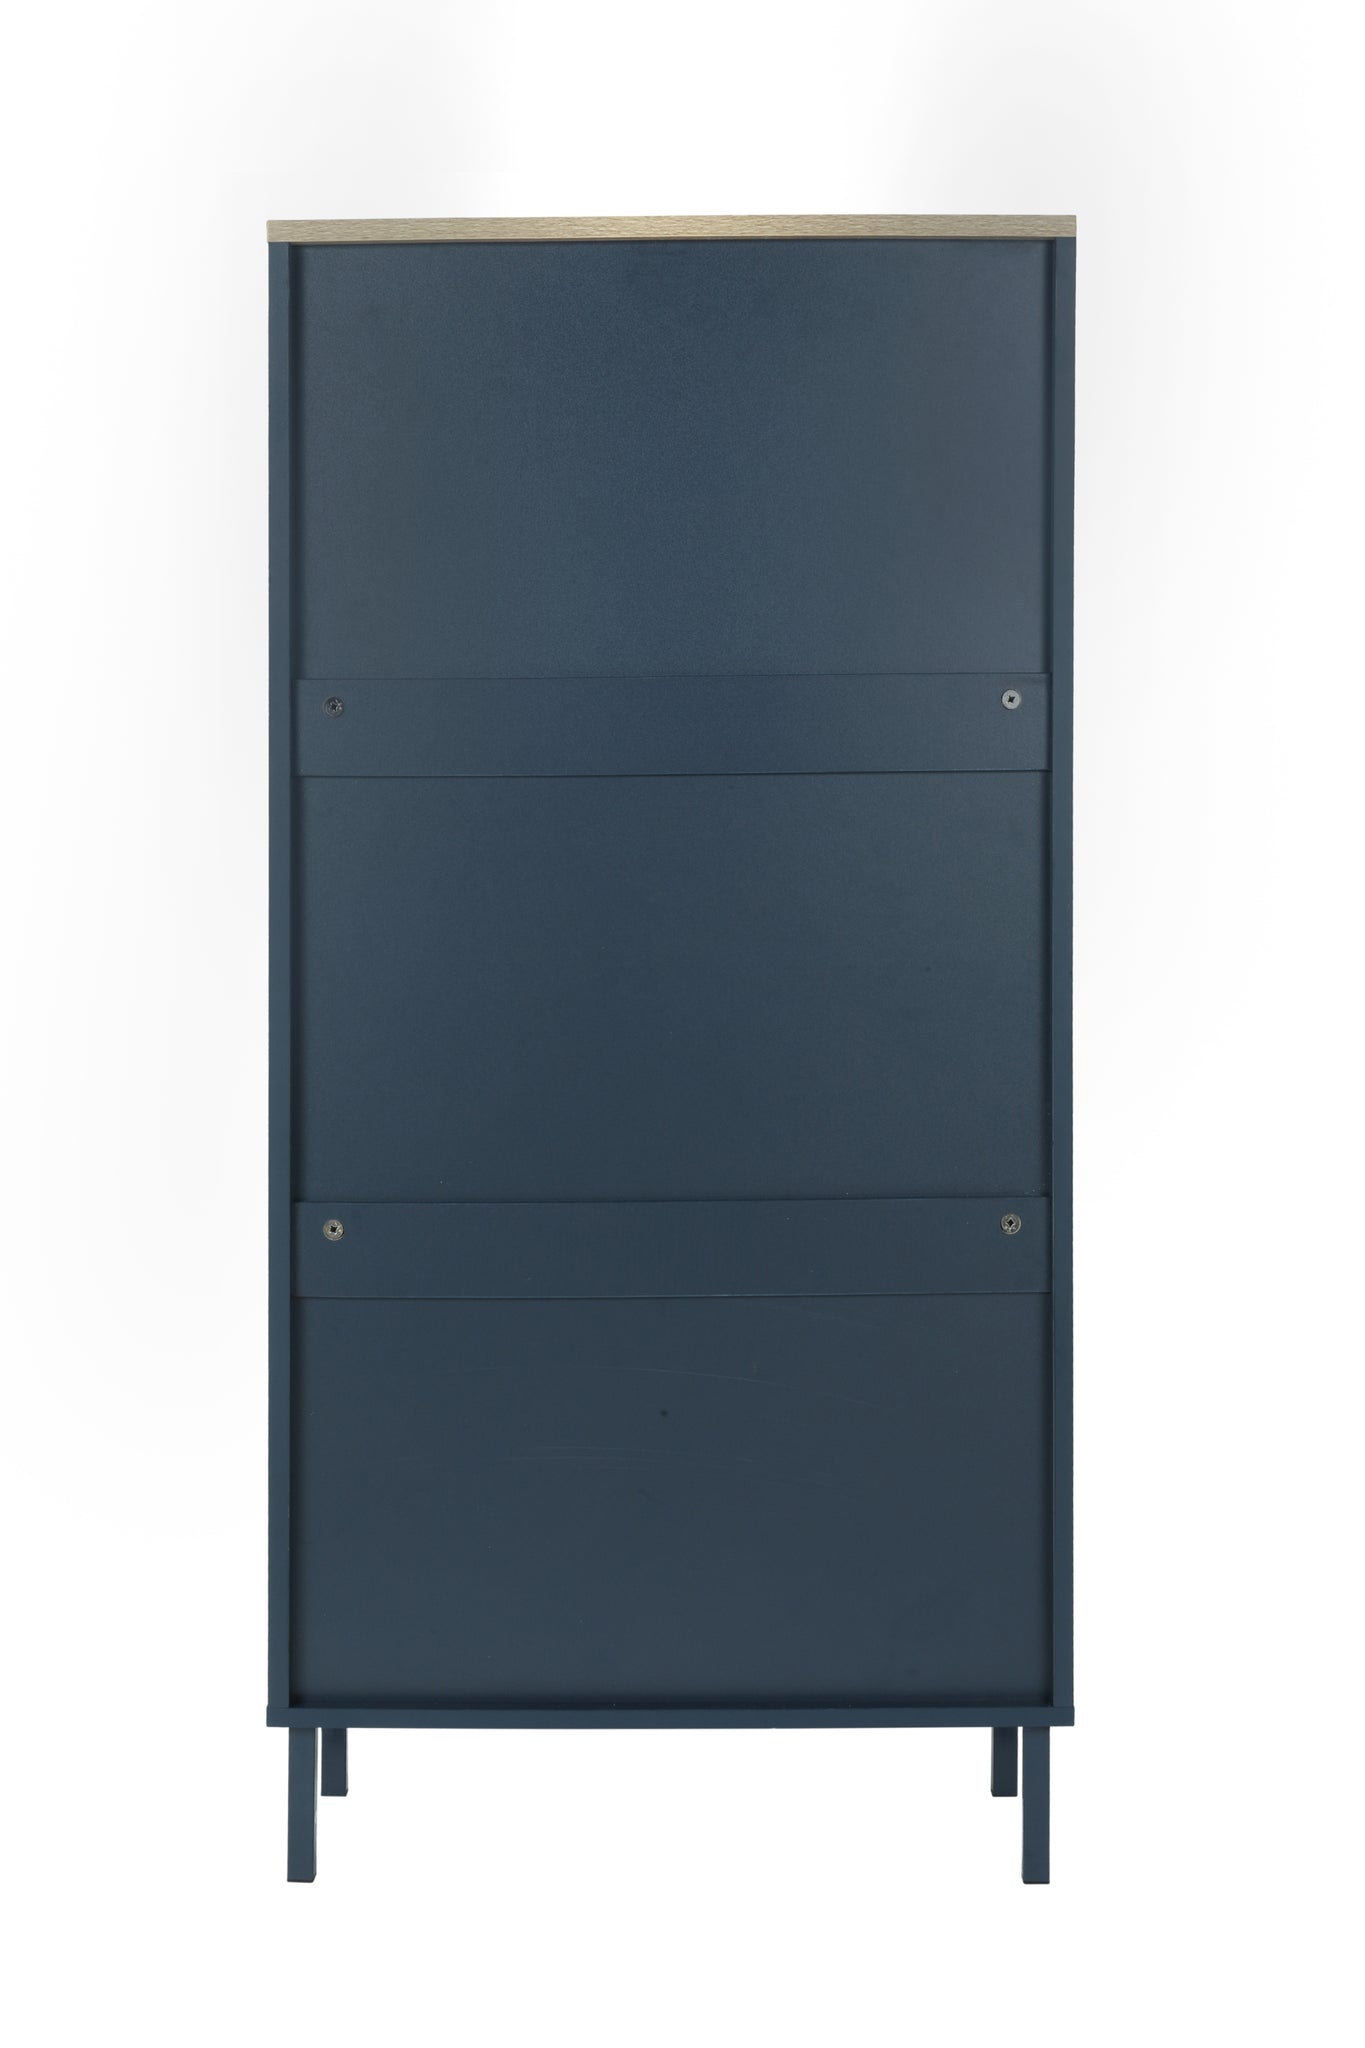 3 Metal Door Shoe Rack, Freestanding Modern Shoe blue-gray-particle board